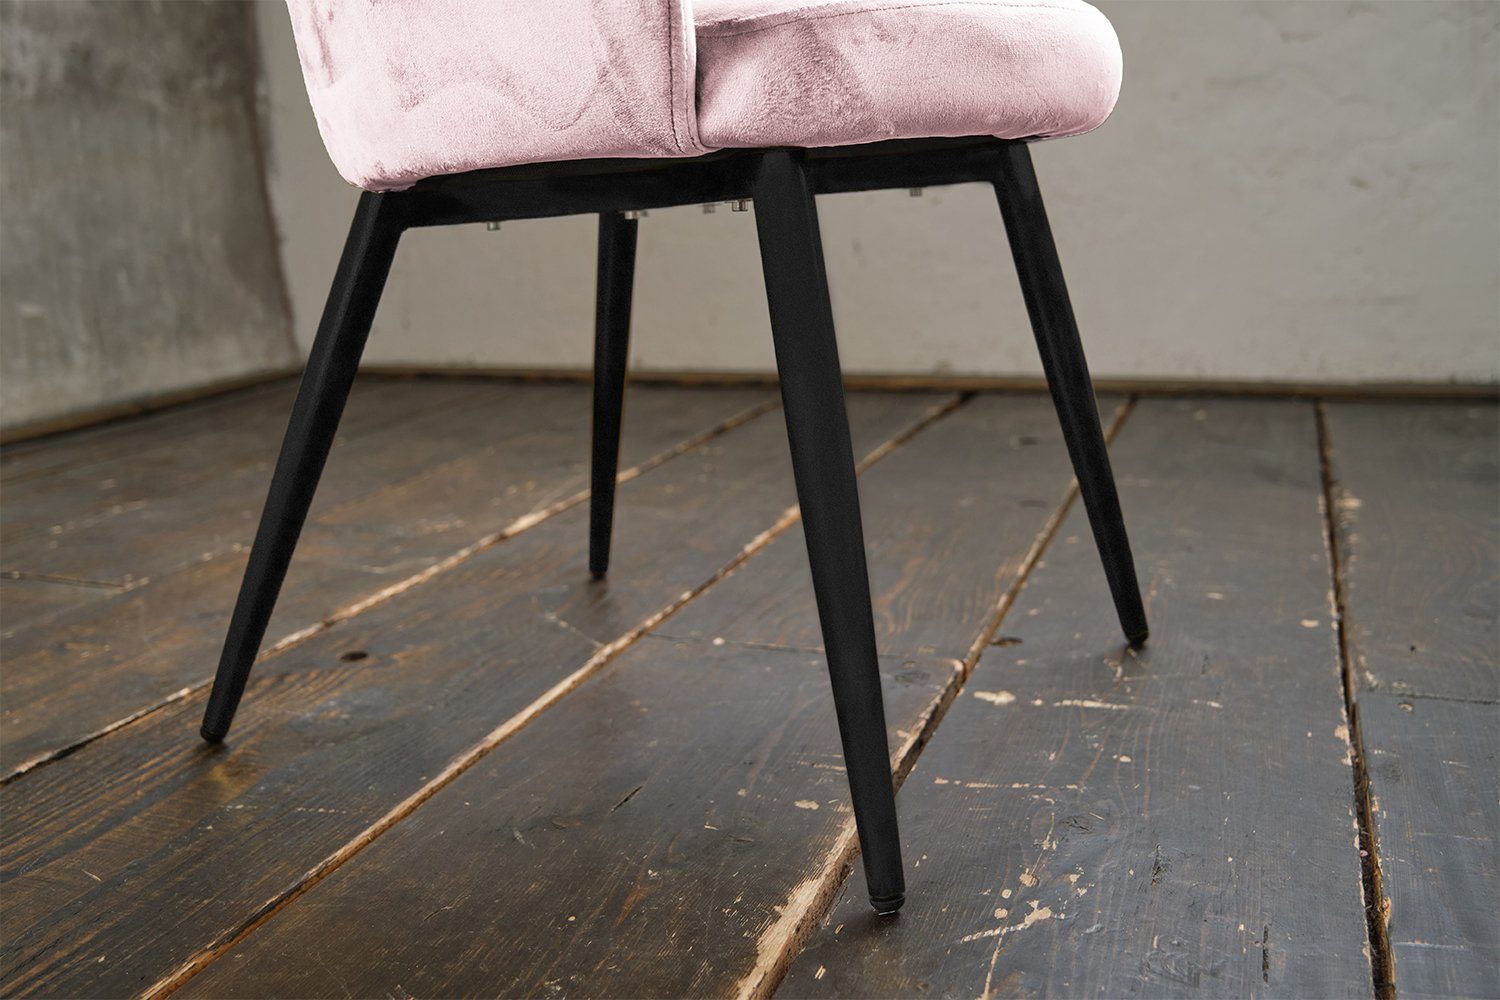 gold schwarz od. Fuß Esszimmerstuhl Stuhl KAWOLA CARLA, rosa versch. Velvet, Farben, | schwarz